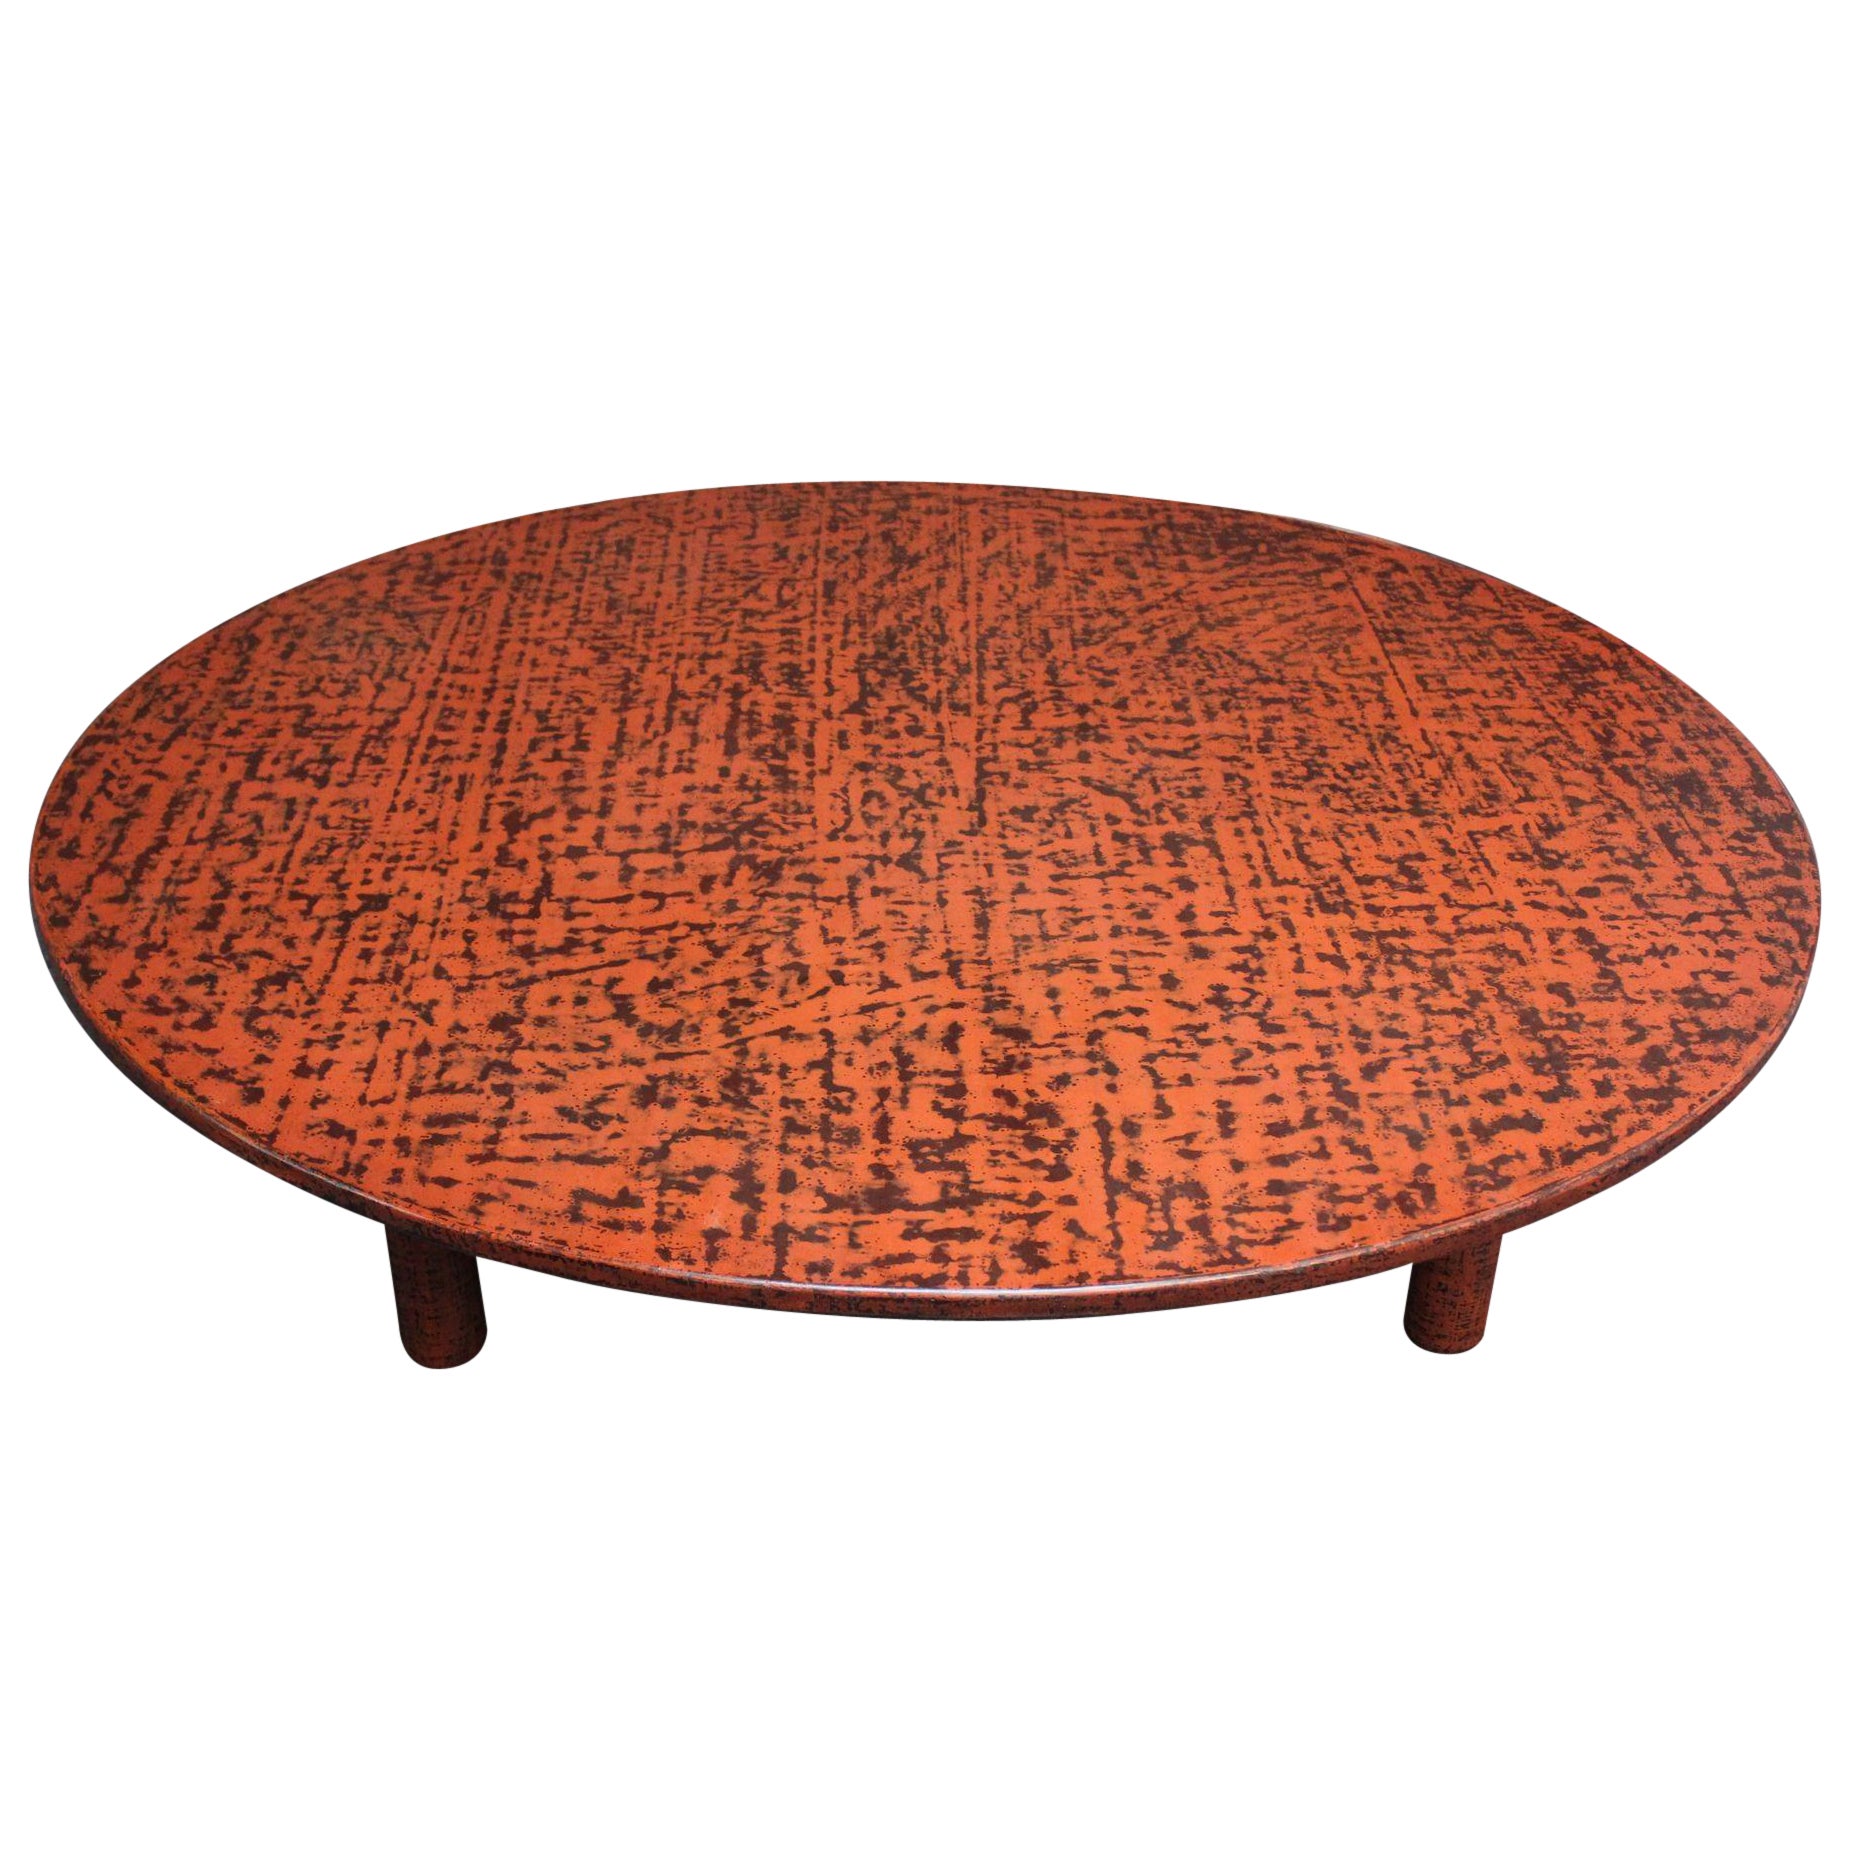 Grande table basse ronde laquée Negoro de style Taishō japonais d'époque